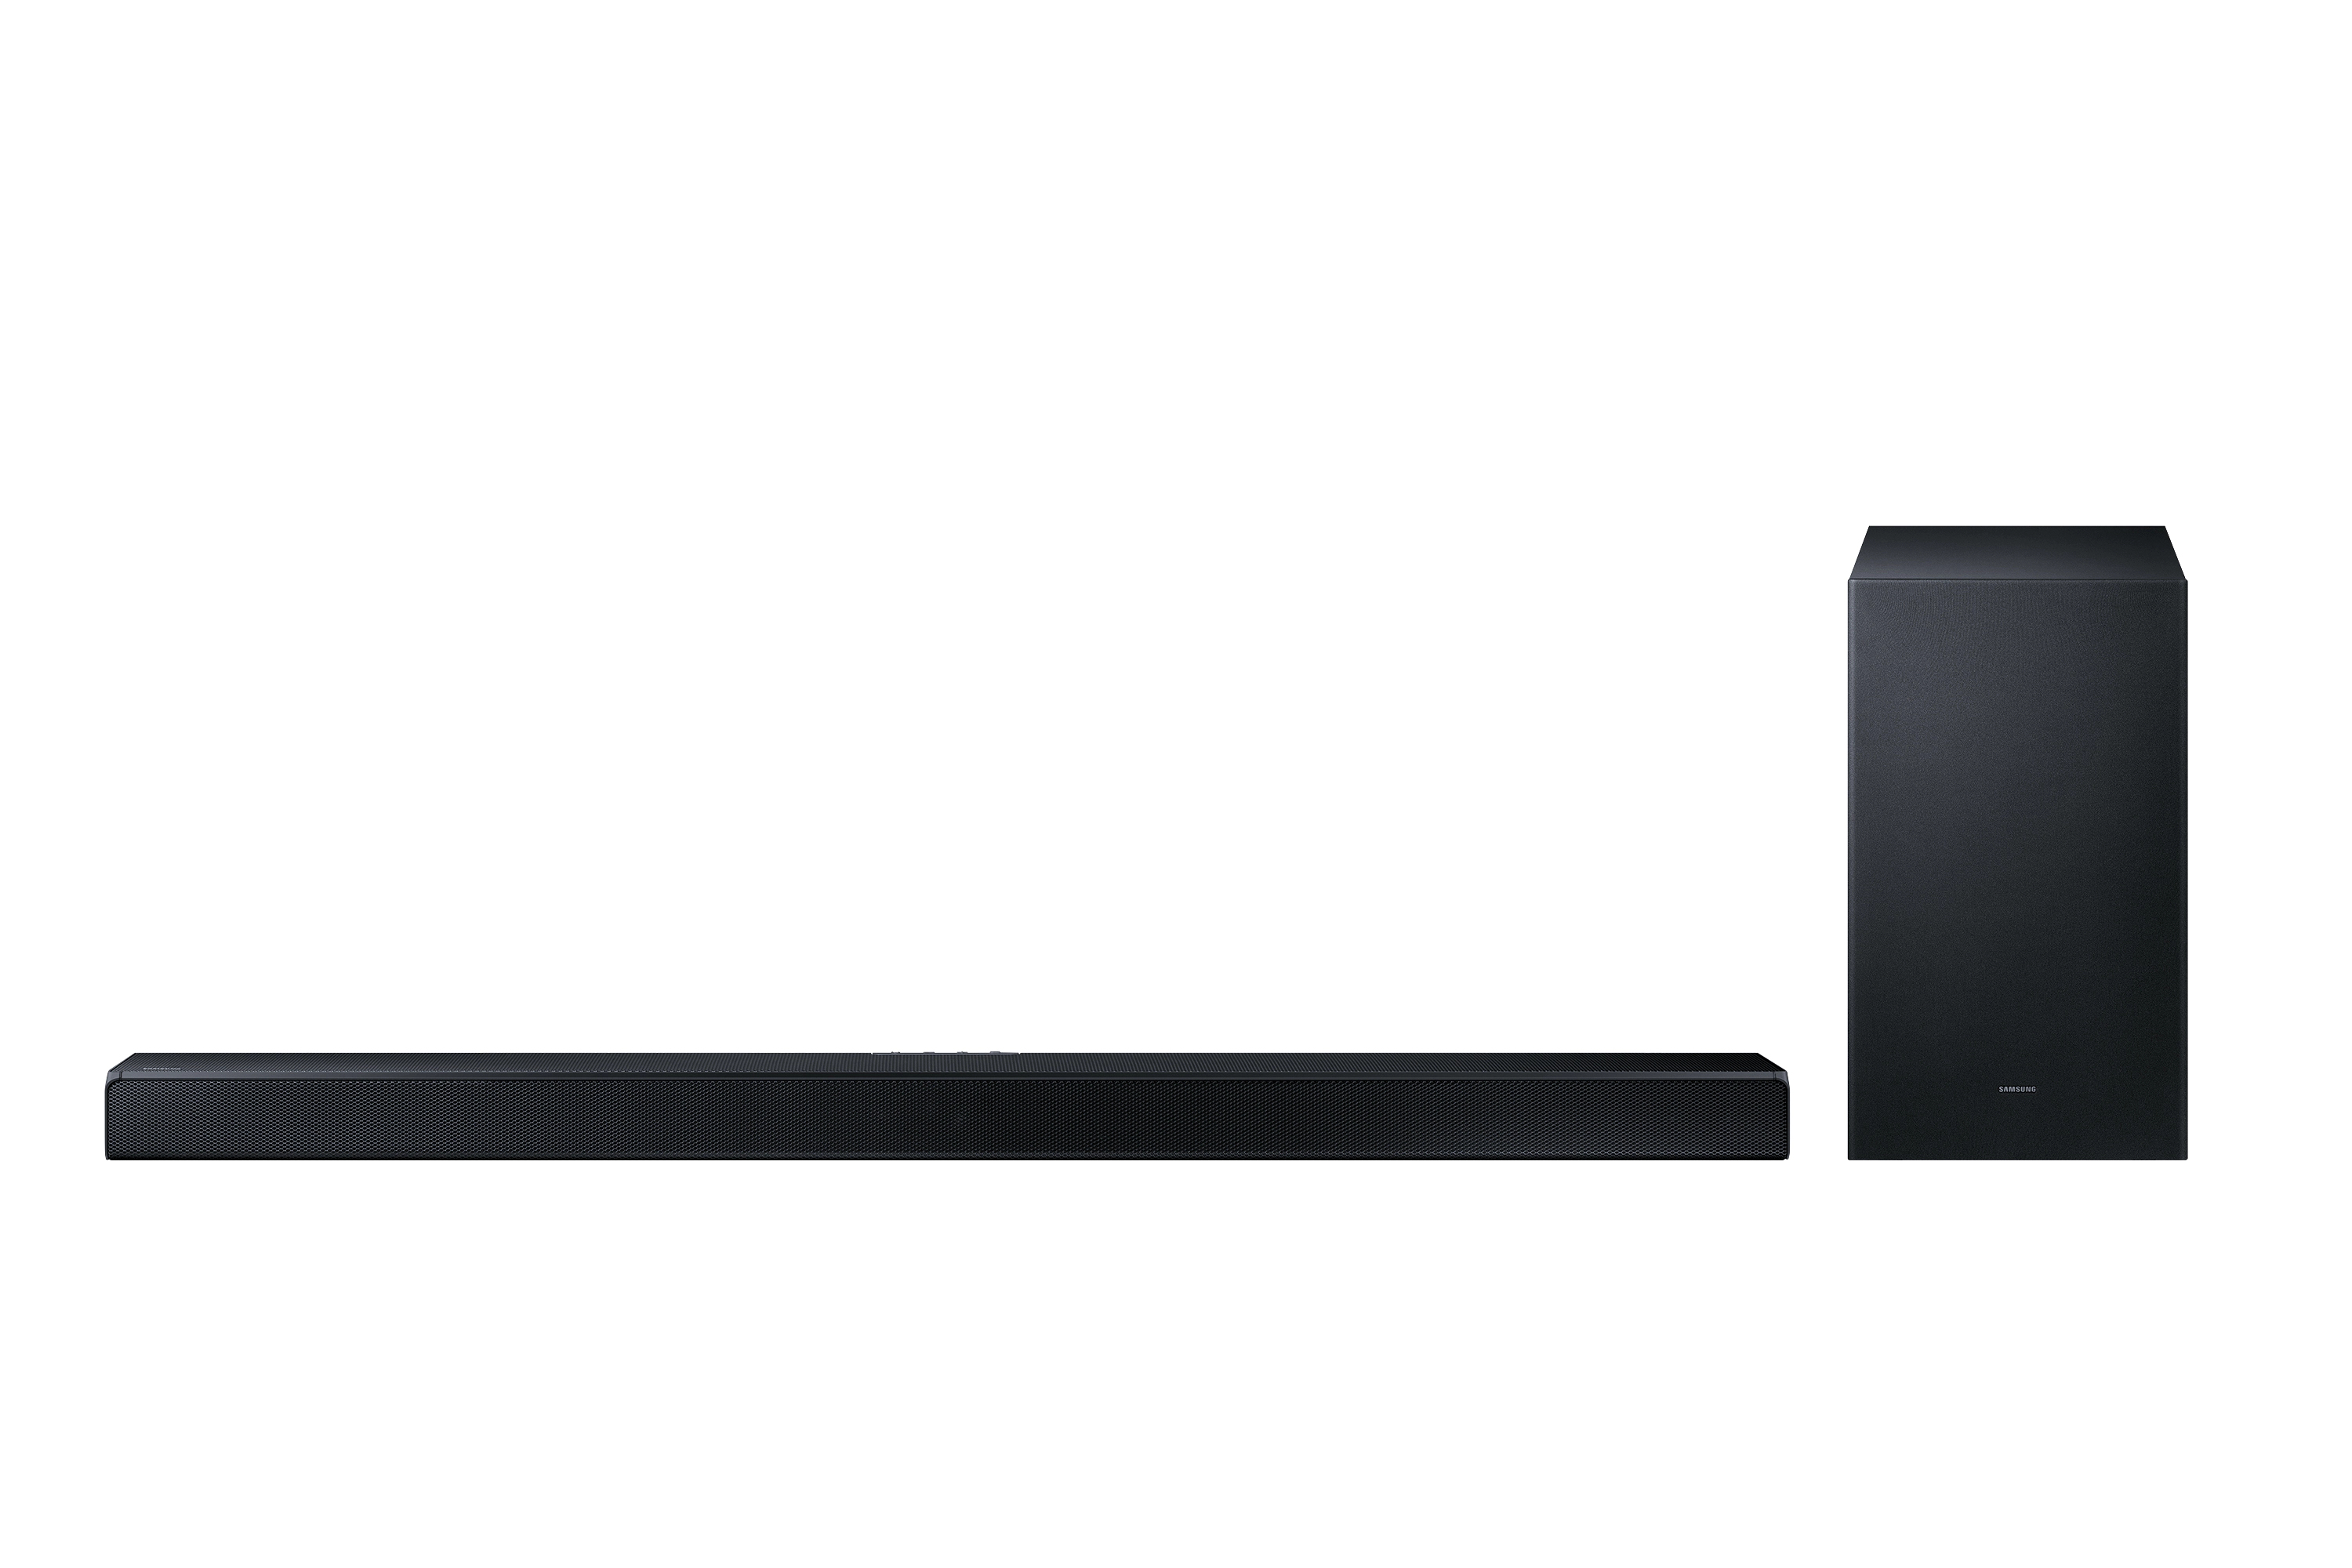 Altoparlante soundbar Samsung HW-A650 Nero 3.1 canali 430 W [HW-A650/ZG]